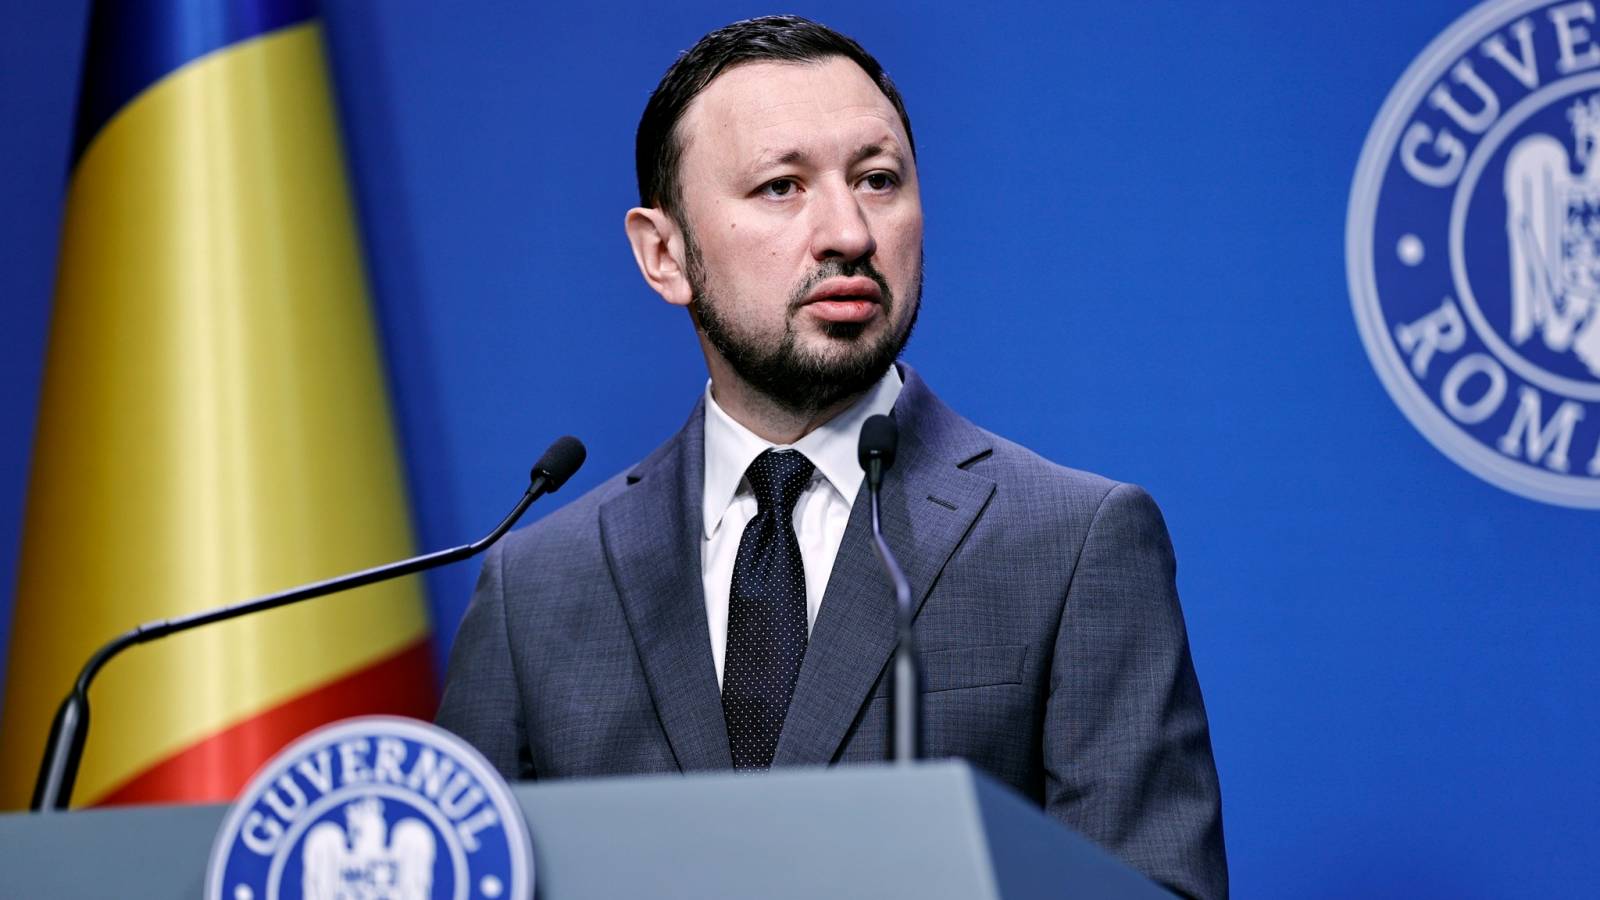 Ministre de l'Environnement Annonces officielles DERNIER MOMENT Roumanie Météorologie de l'eau